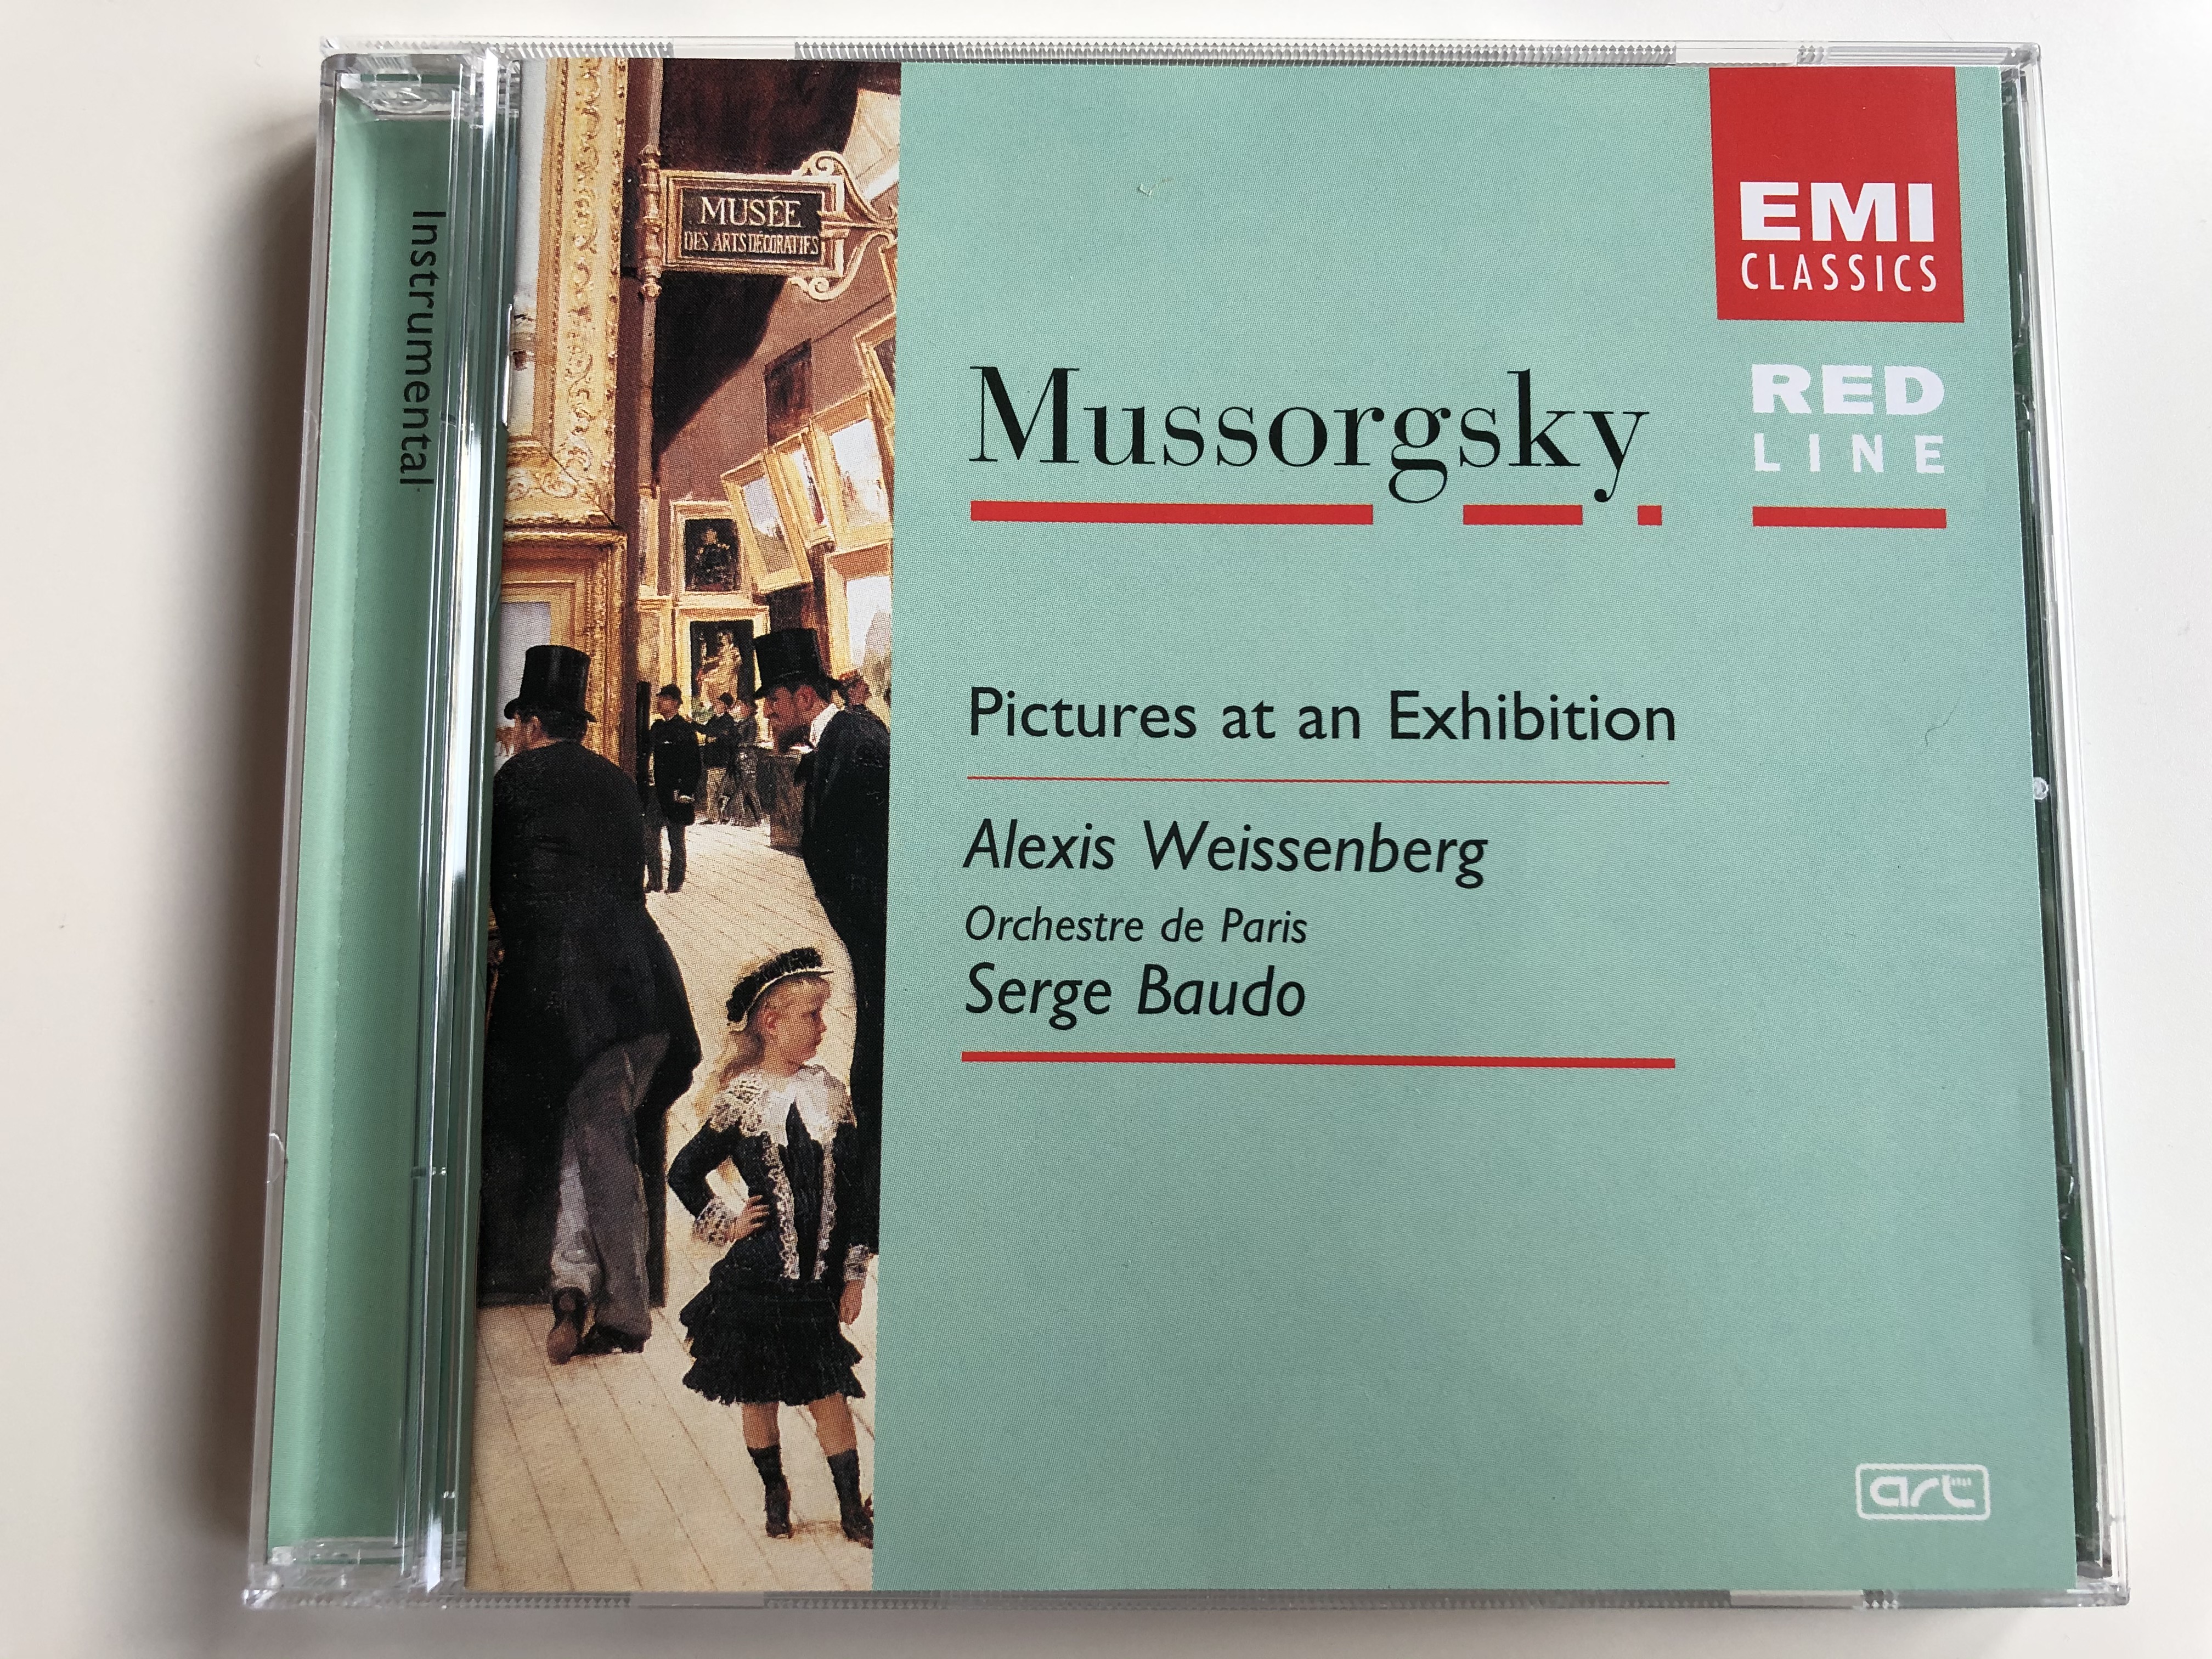 mussorgsky-pictures-at-an-exhibition-alexis-weissenberg-orchestre-de-paris-serge-baudo-emi-classics-audio-cd-7243-5-73752-2-1-1-.jpg